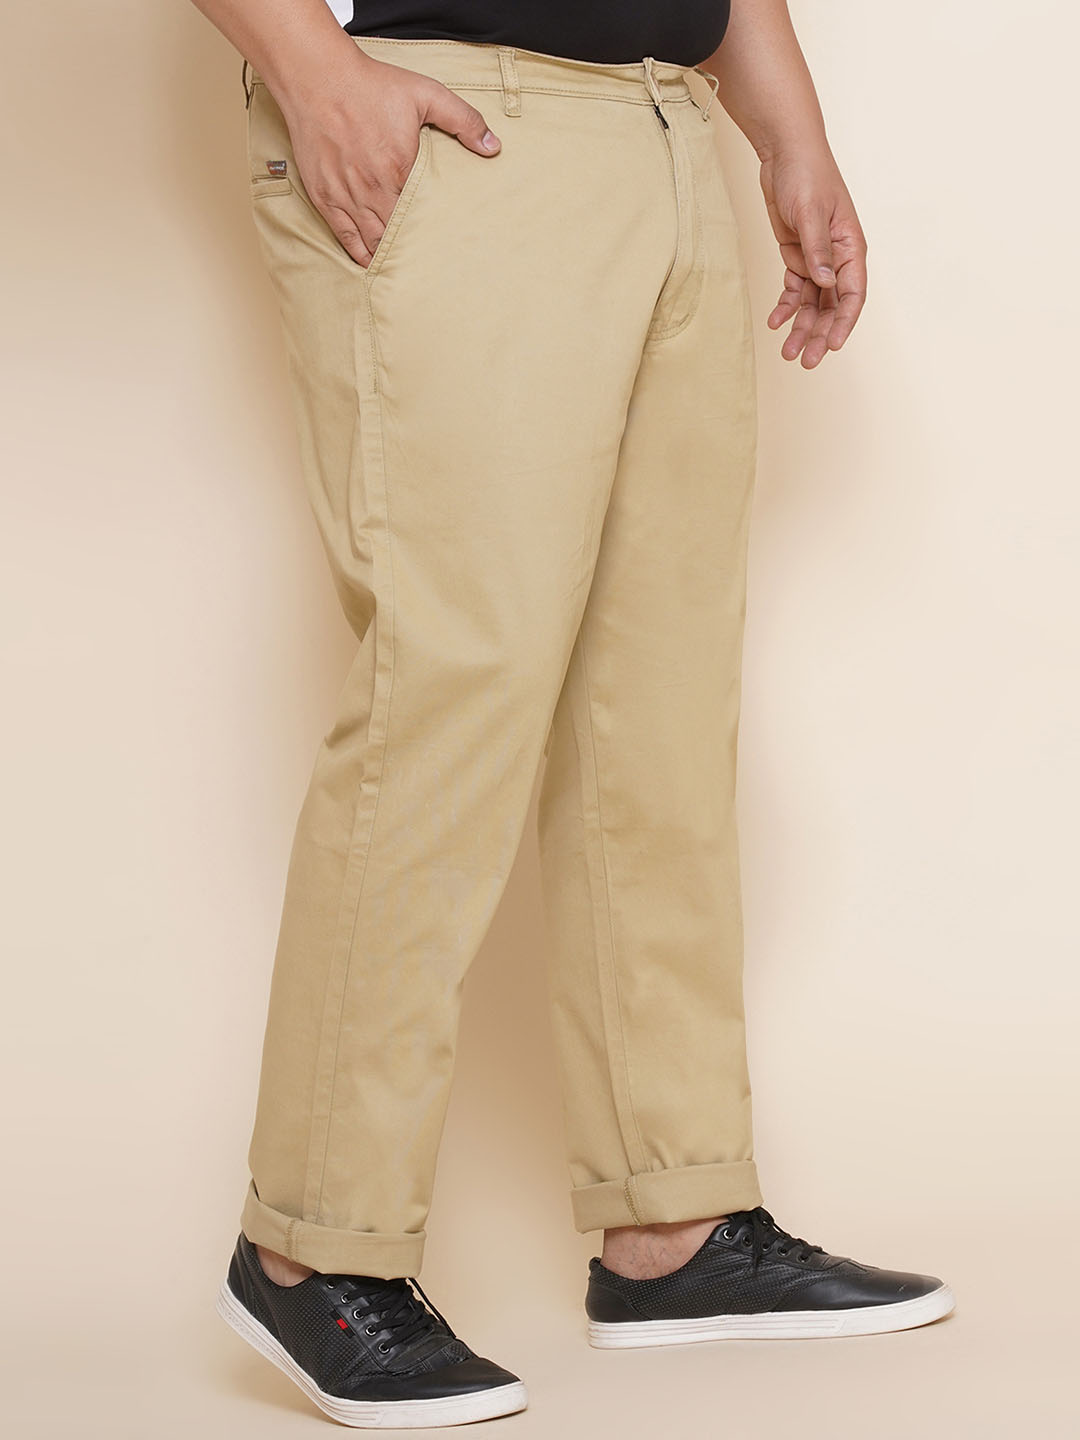 bottomwear/trousers/JPTR21014/jptr21014-4.jpg